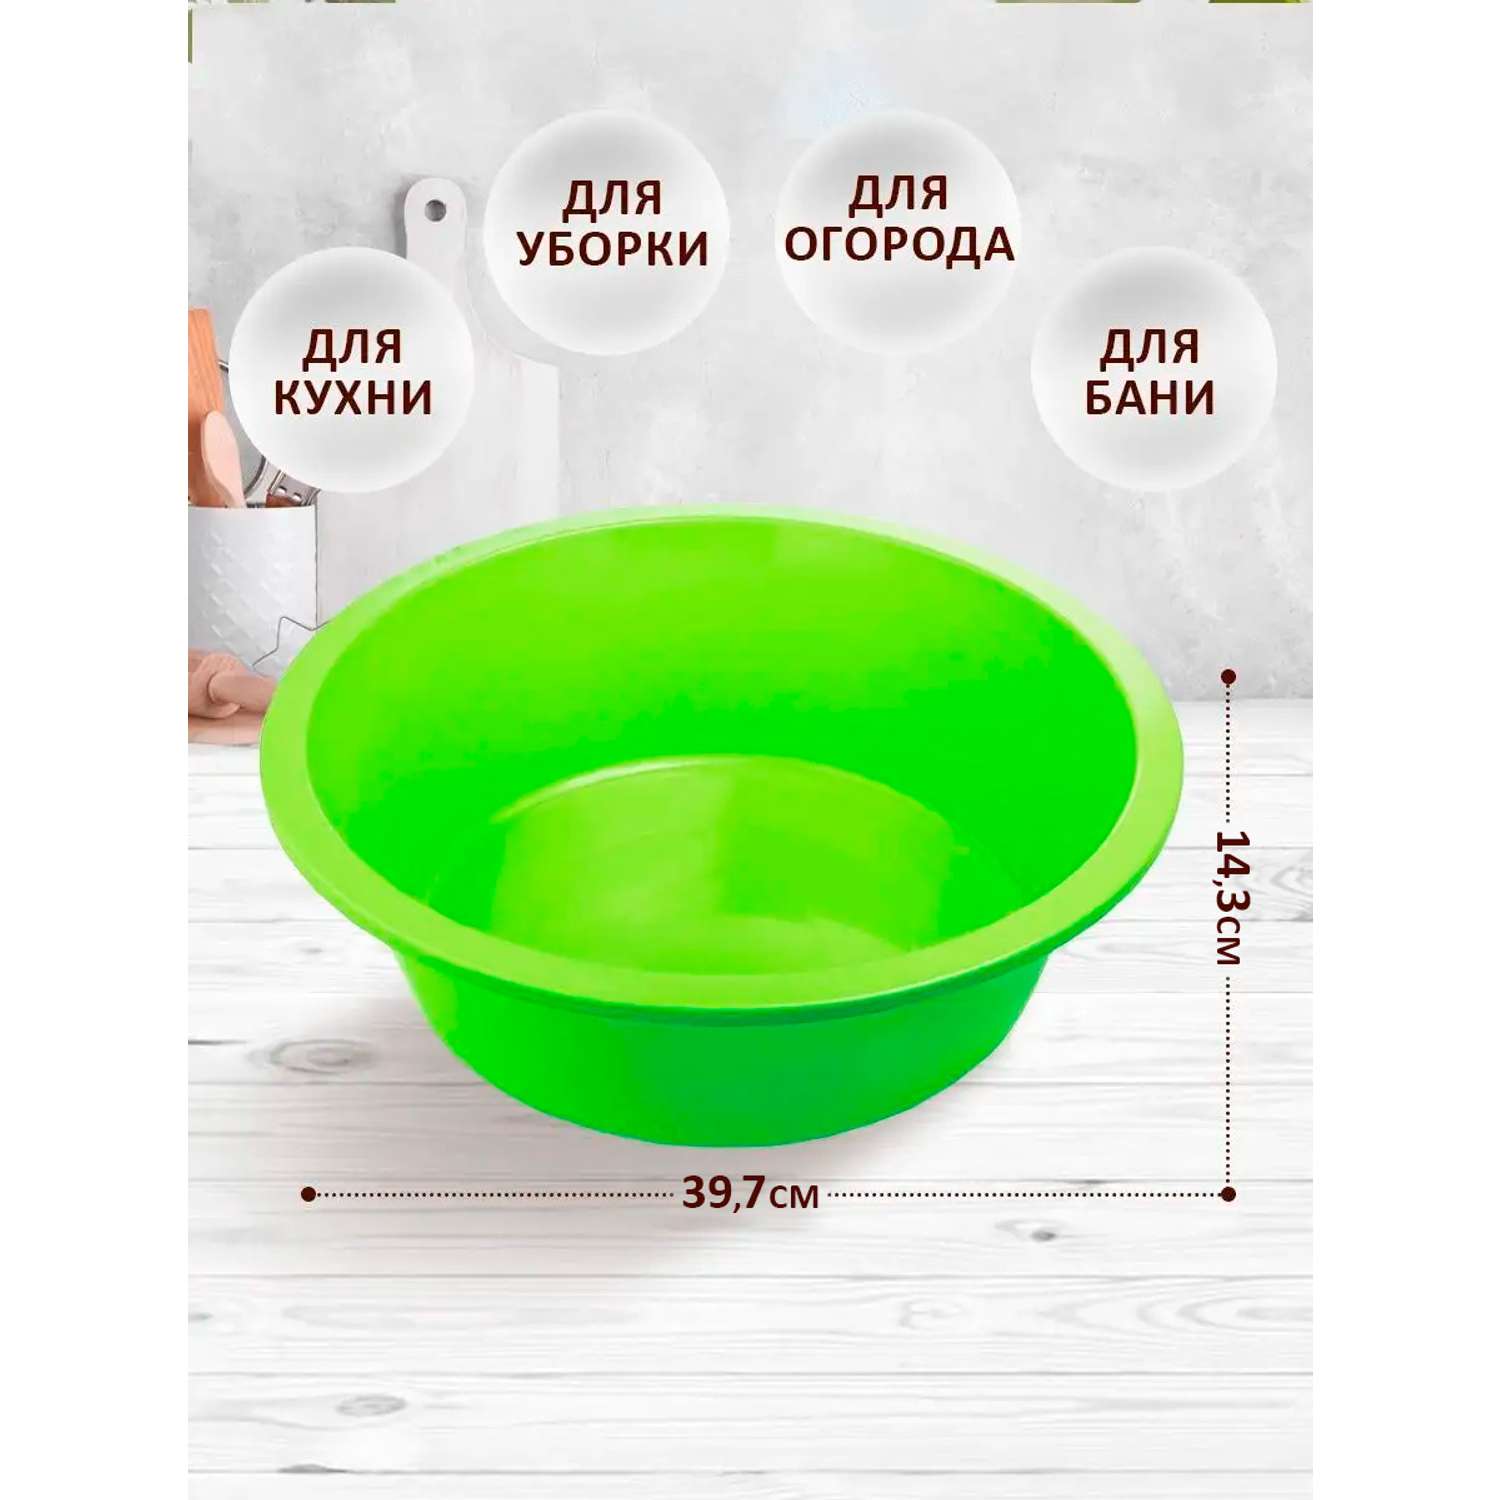 Таз elfplast круглый 11 литров салатовый хозяйственный - фото 1